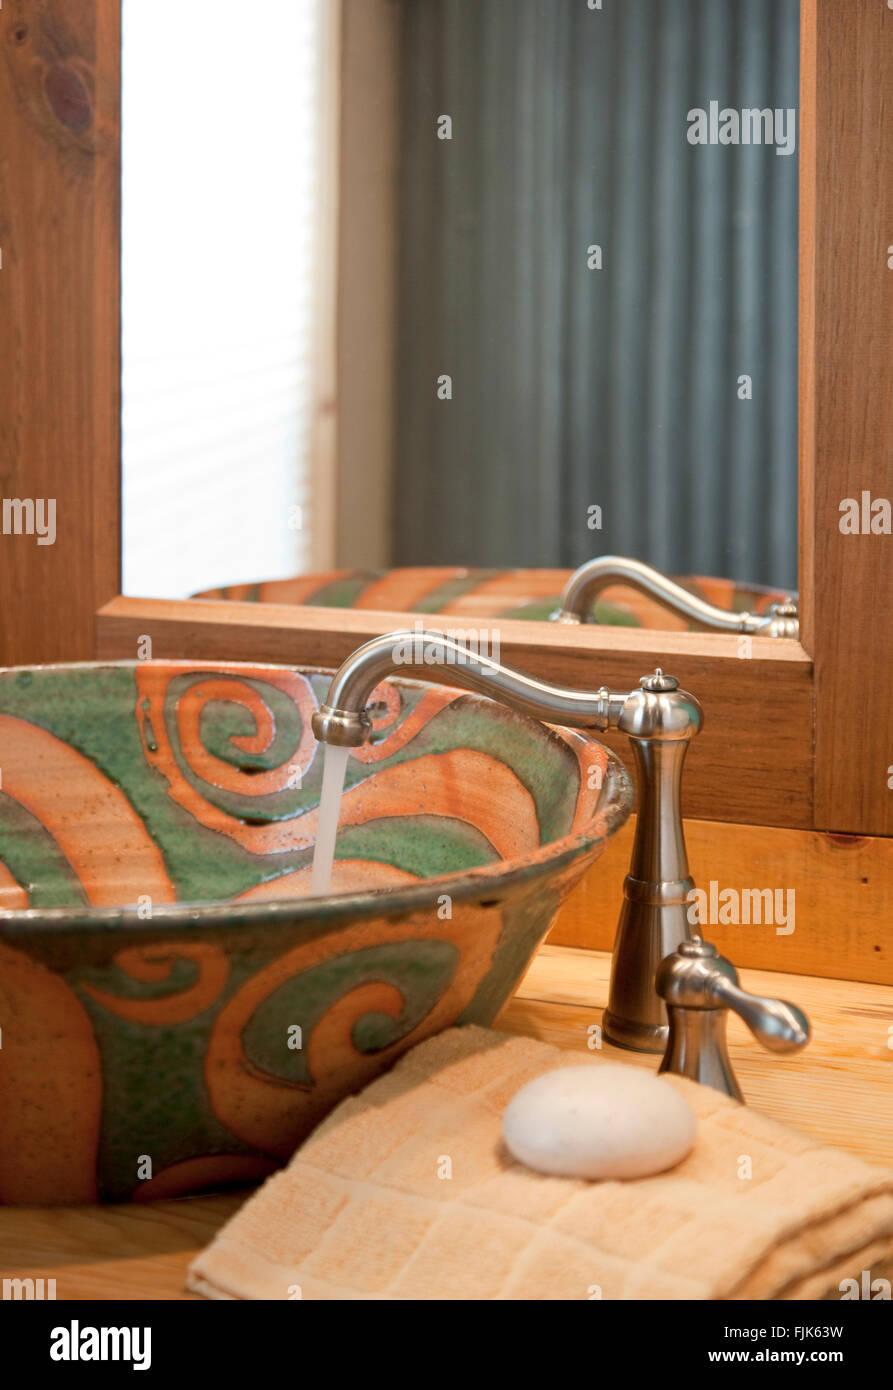 L'eau courante à partir d'un robinet en acier inoxydable dans un évier en céramique fait main, serviette et un miroir dans une salle de bains salle d'eau accueil créative vanity Banque D'Images